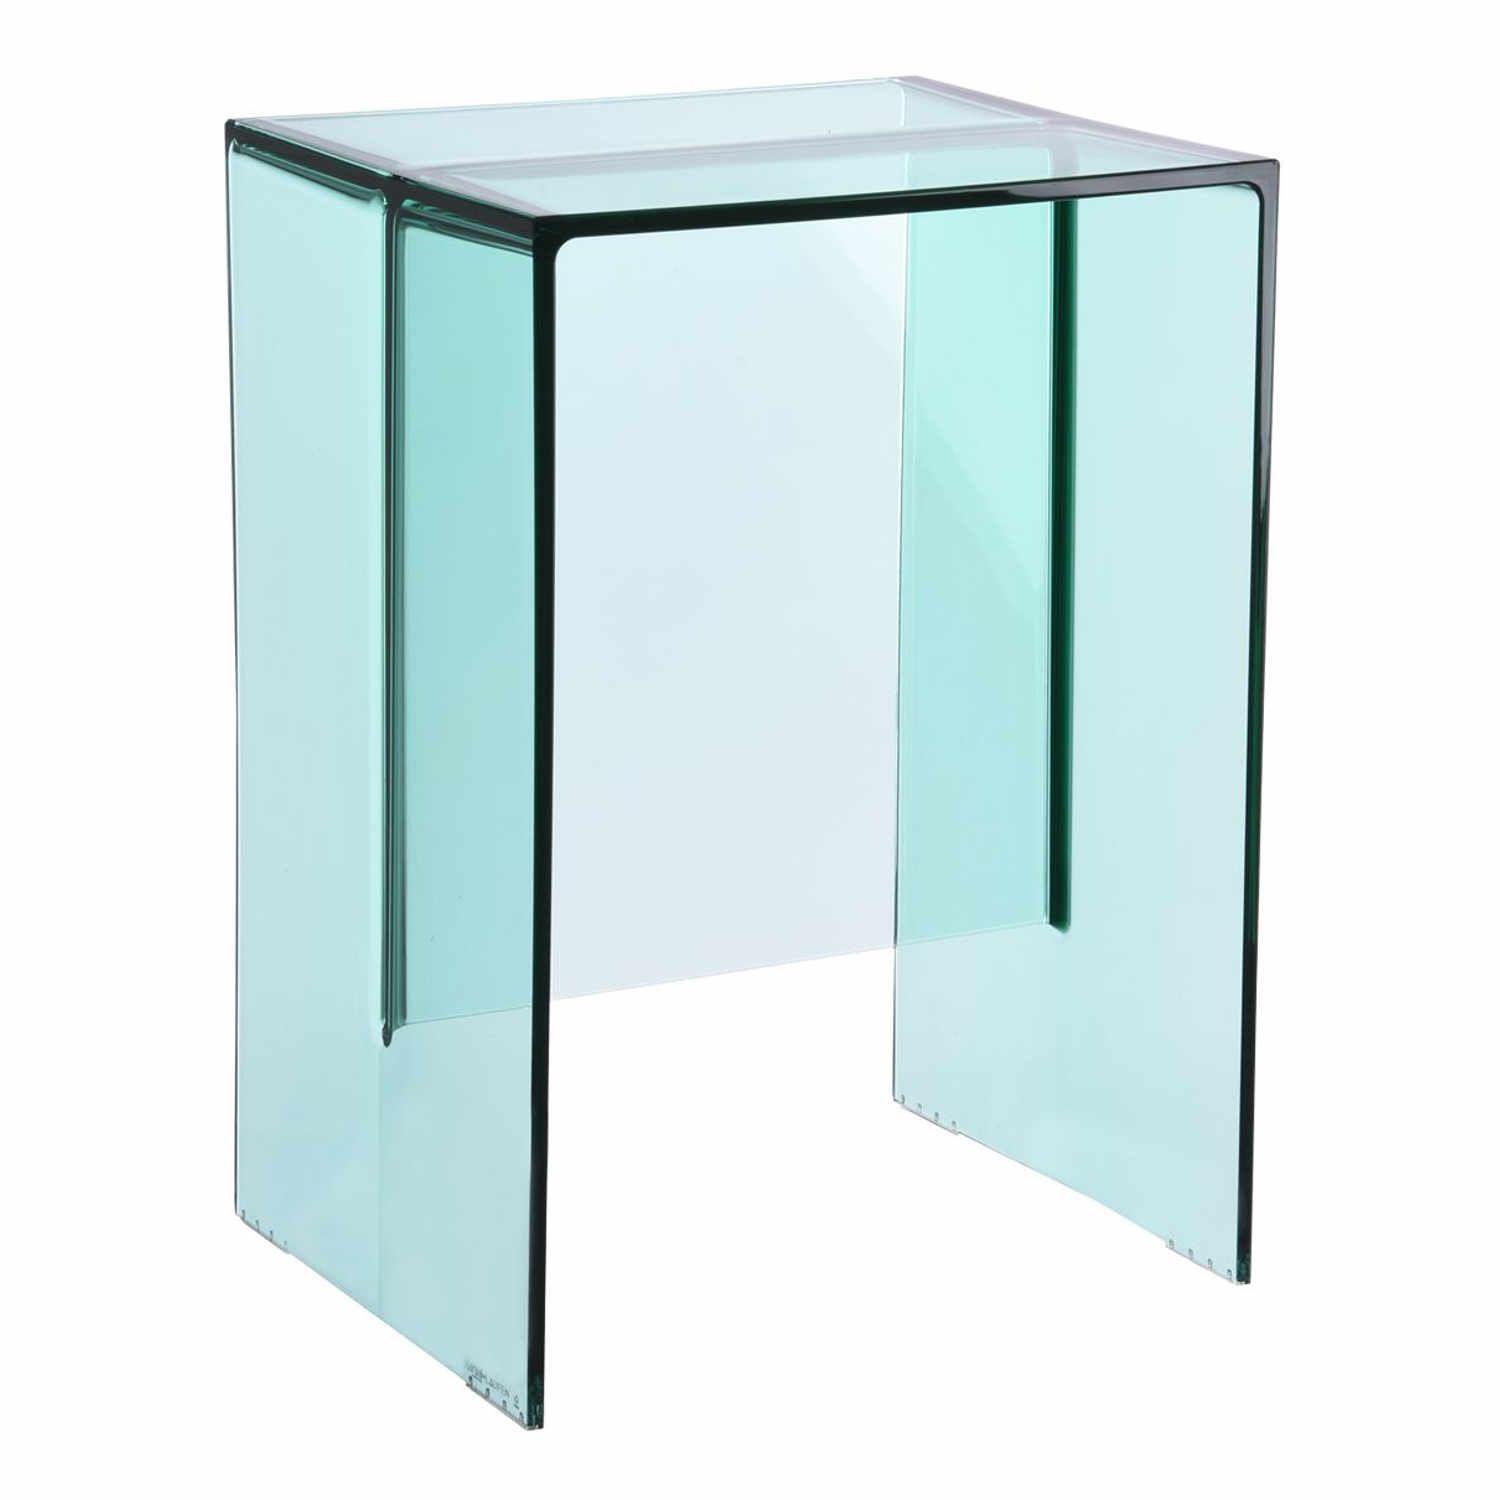 Max-Beam by Laufen Beistelltisch, Farbe transparent/aquamaringrün von Kartell